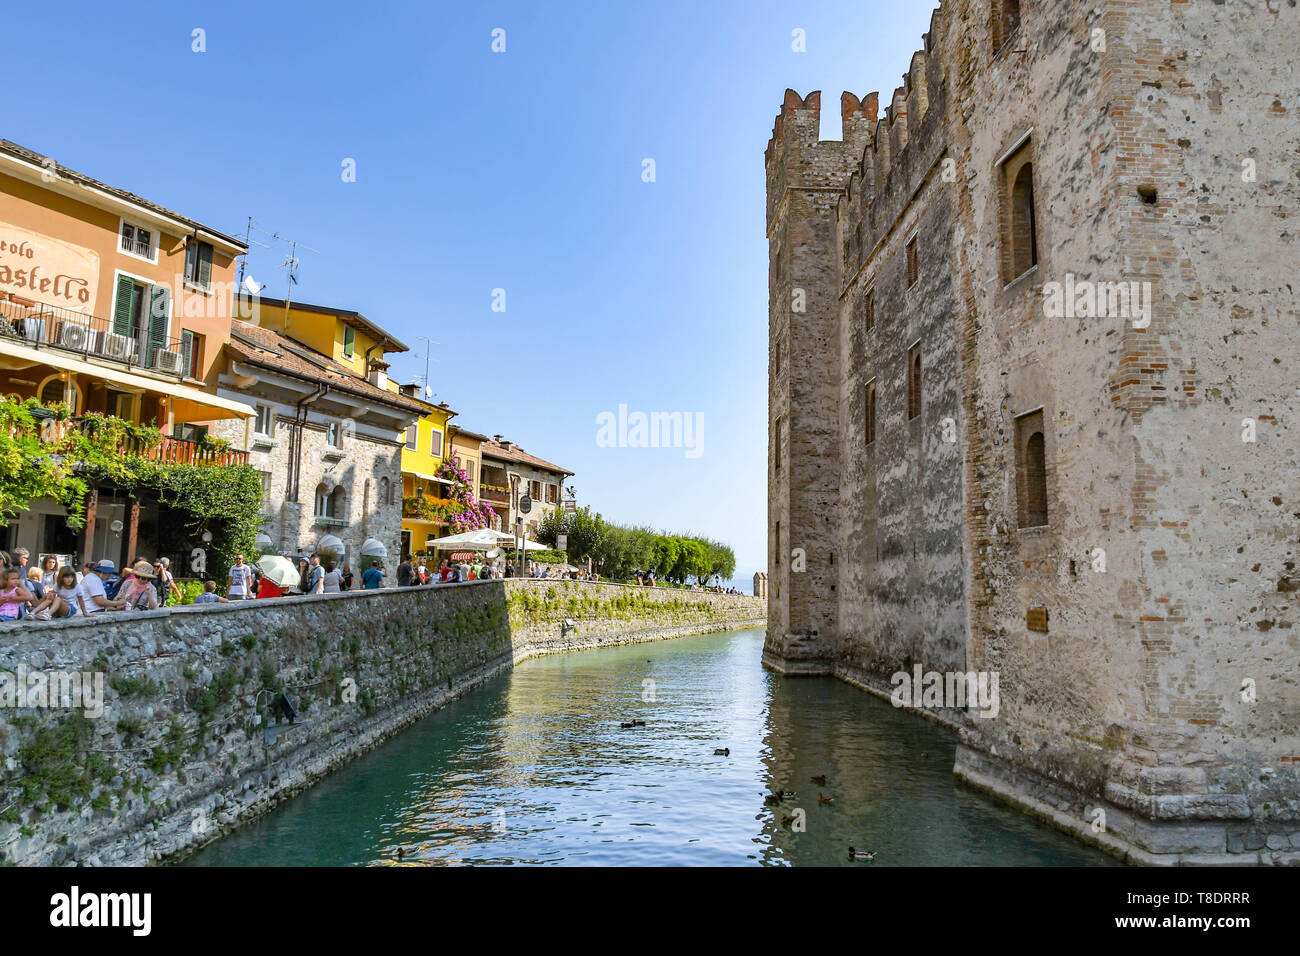 SIRMIONE SUL LAGO DI GARDA, Italia - Settembre 2018: le pareti e il fossato del castello scaligero nel centro di Sirmione sul Lago di Garda. Foto Stock